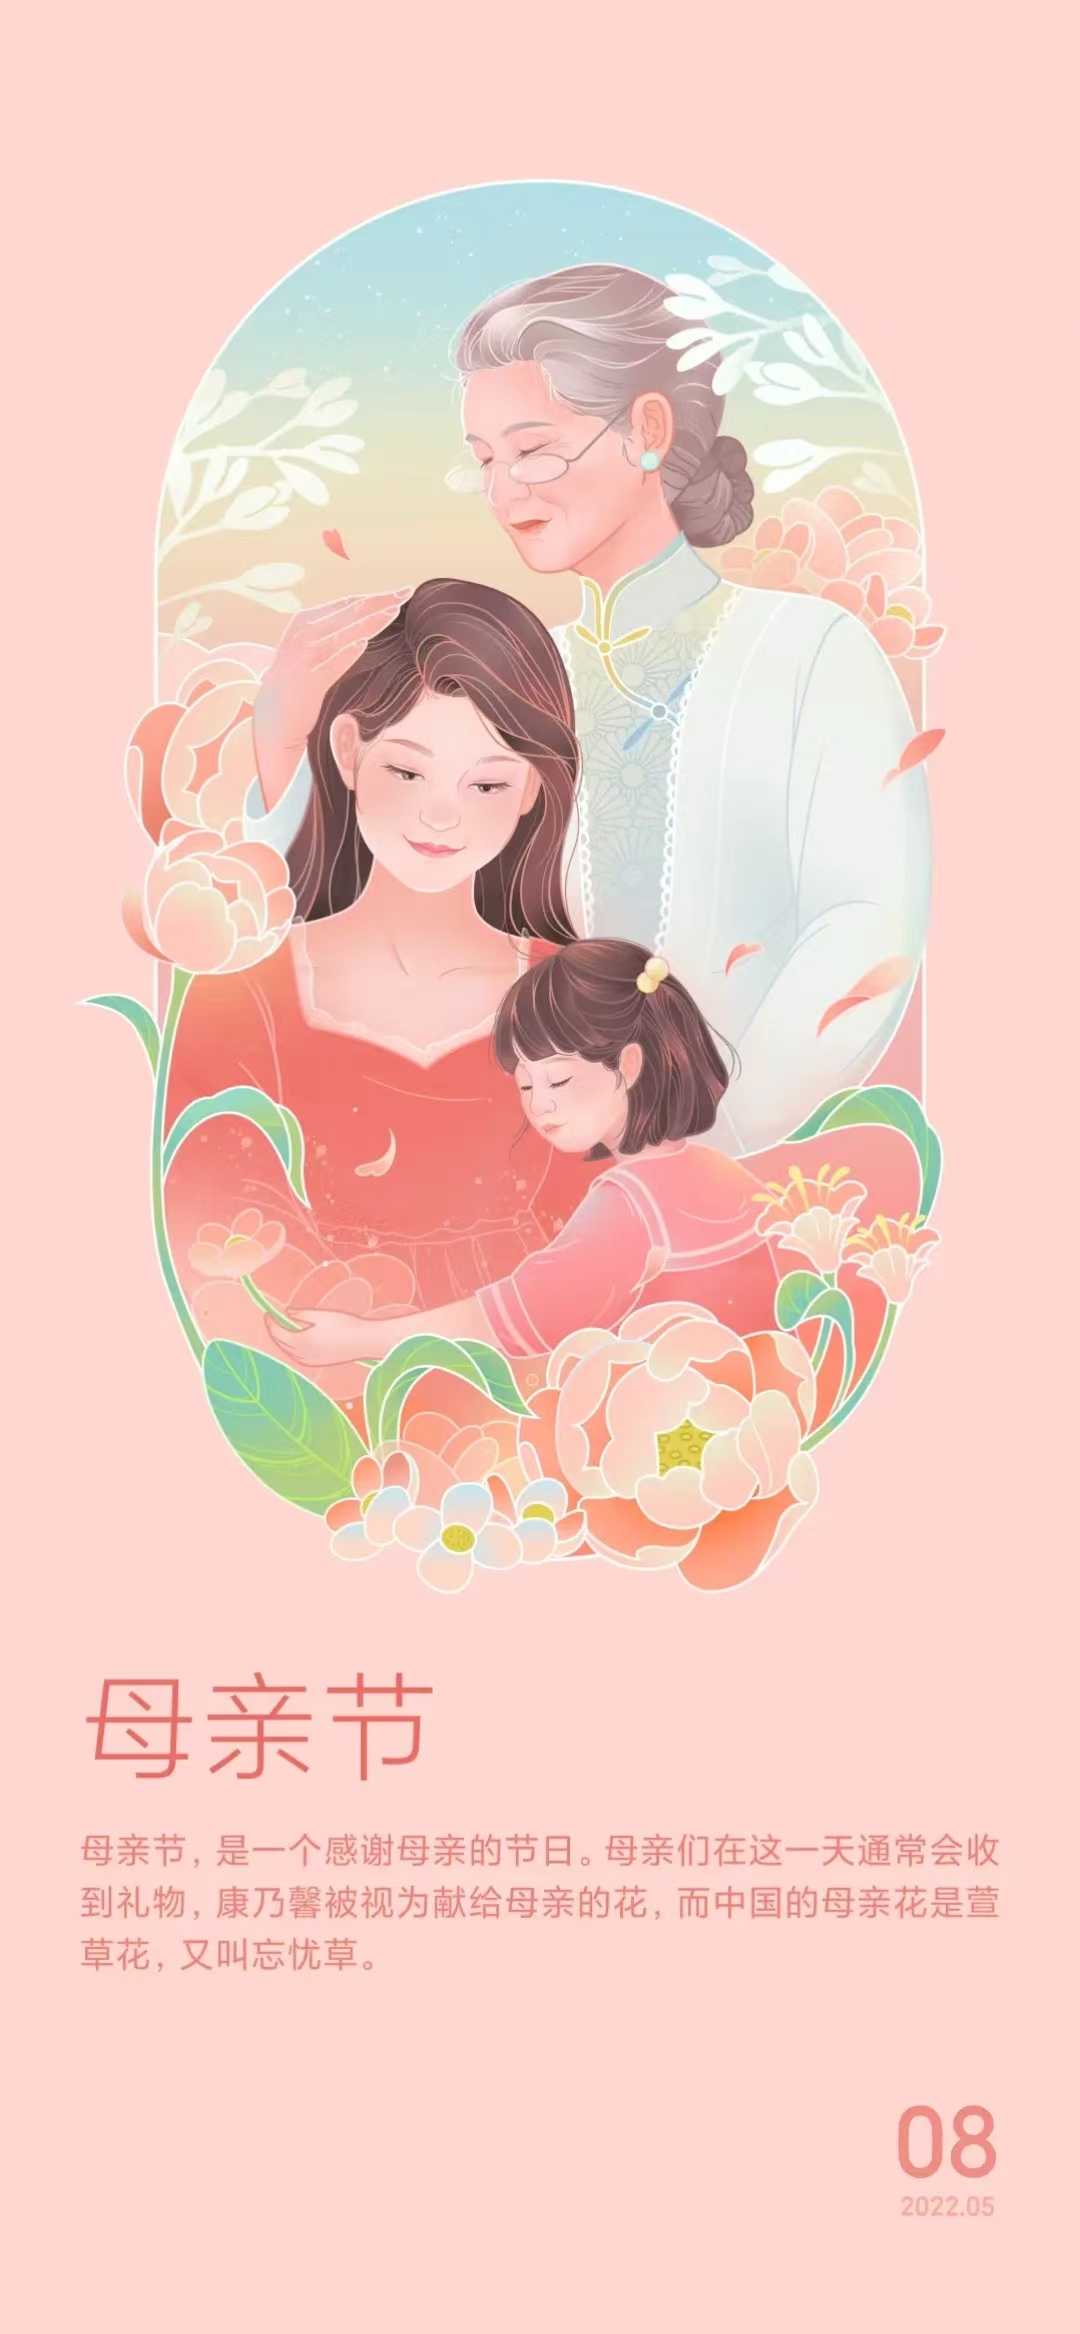 「2022.05.08」早安心语，母亲节正能量语录句子 祝福海报图片带字